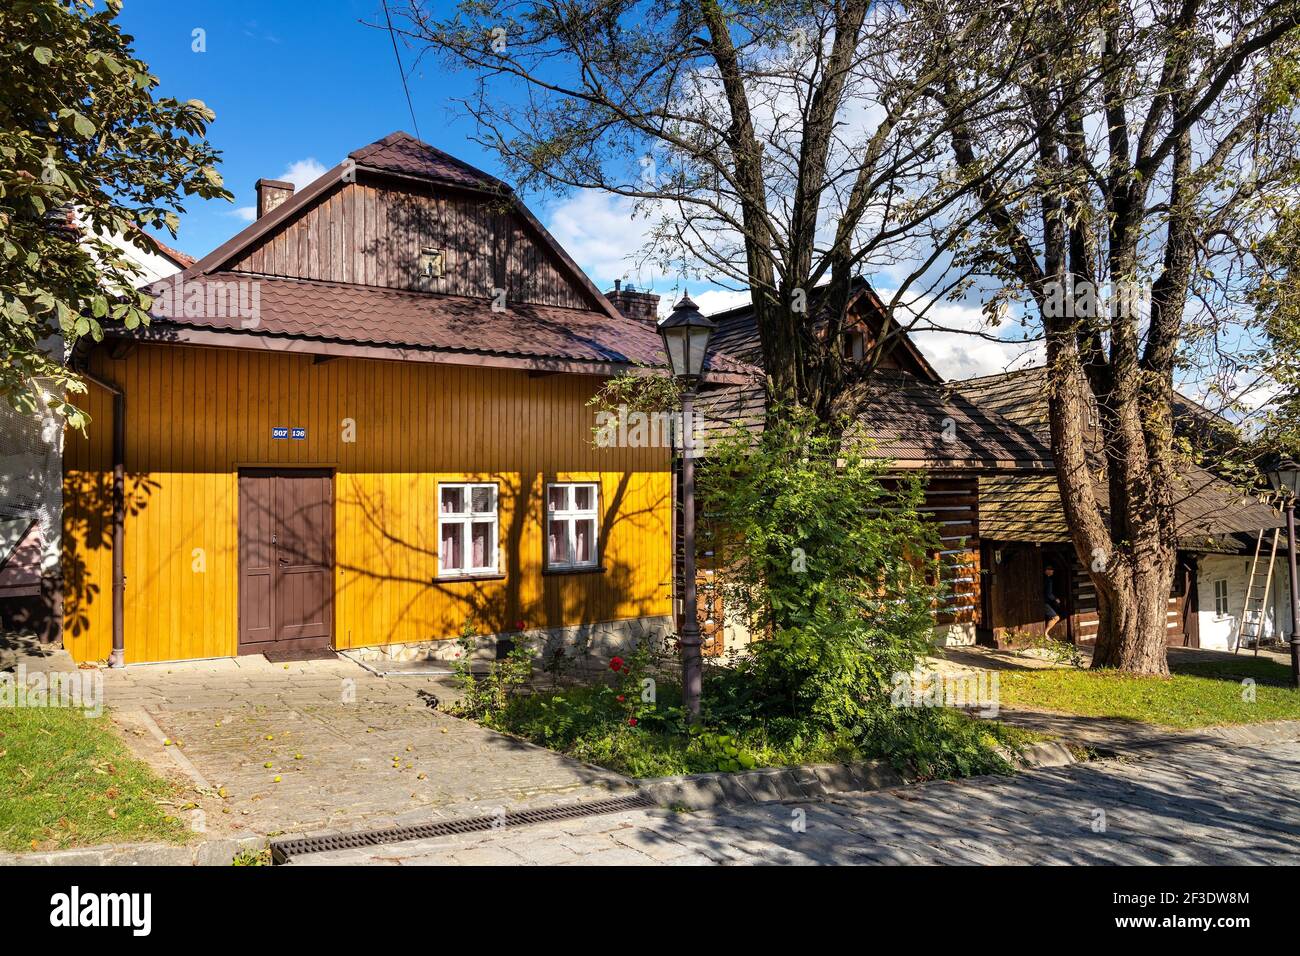 Lanckorona, Pologne - 27 août 2020 : maisons traditionnelles en bois dans la ville historique du musée royal en plein air de Lanckorona, dans la région montagneuse de Lesser Pola Banque D'Images